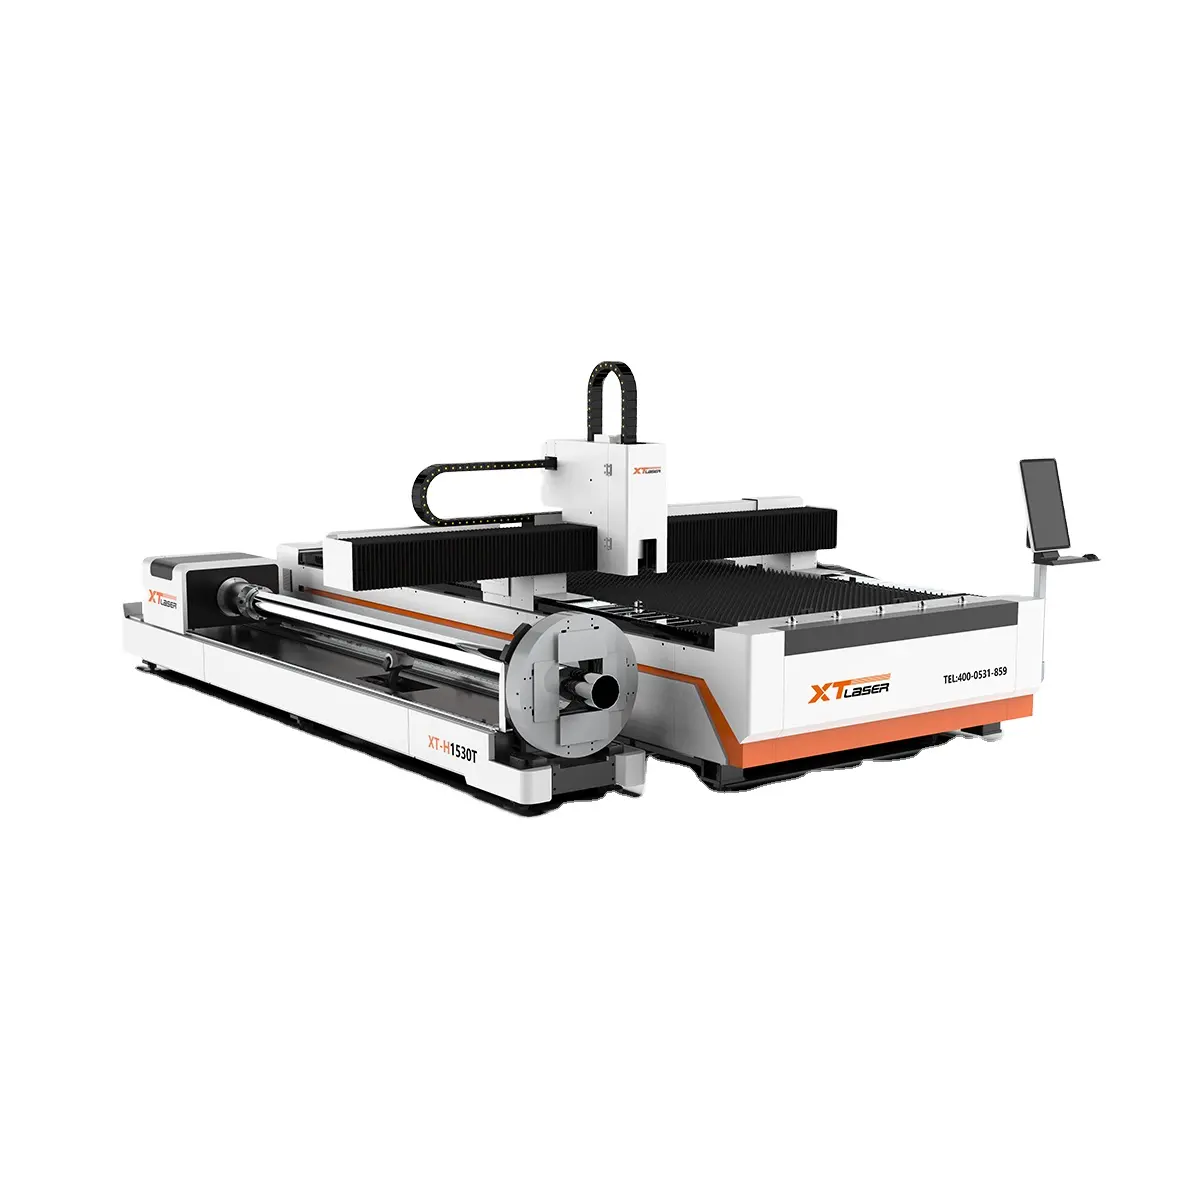 Mesin pemotong Laser serat 3015 Harga terbaik 1-6kw karet kayu logam manufaktur ritel mendukung Format grafis AI Pdt